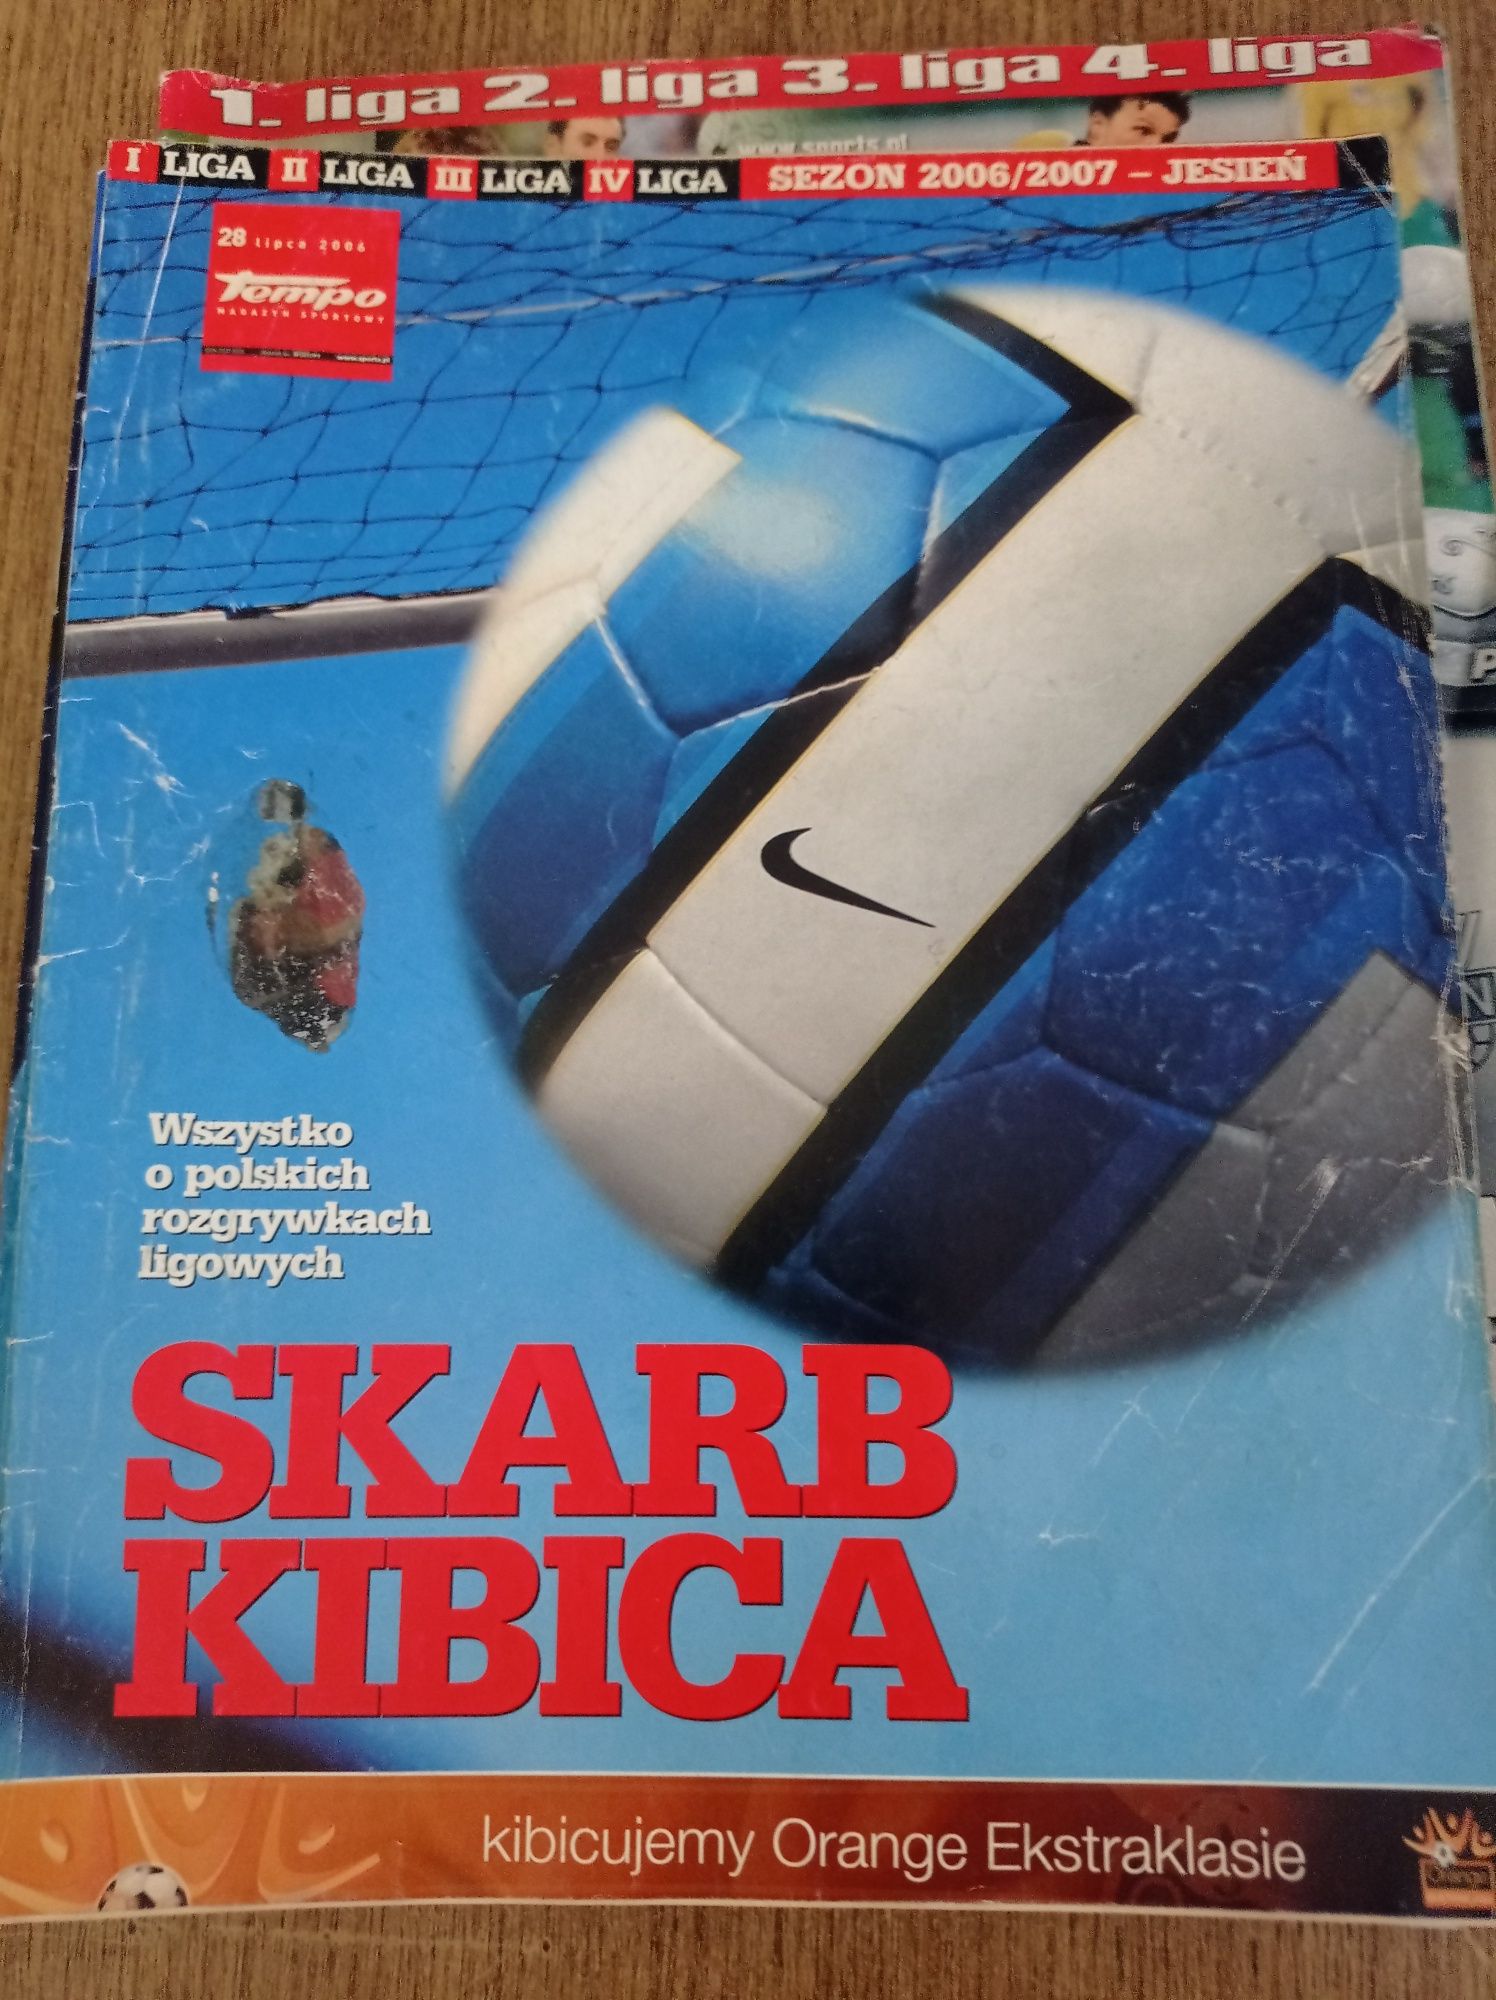 Skarb kibica - Liga polska 2006/2007 jesień